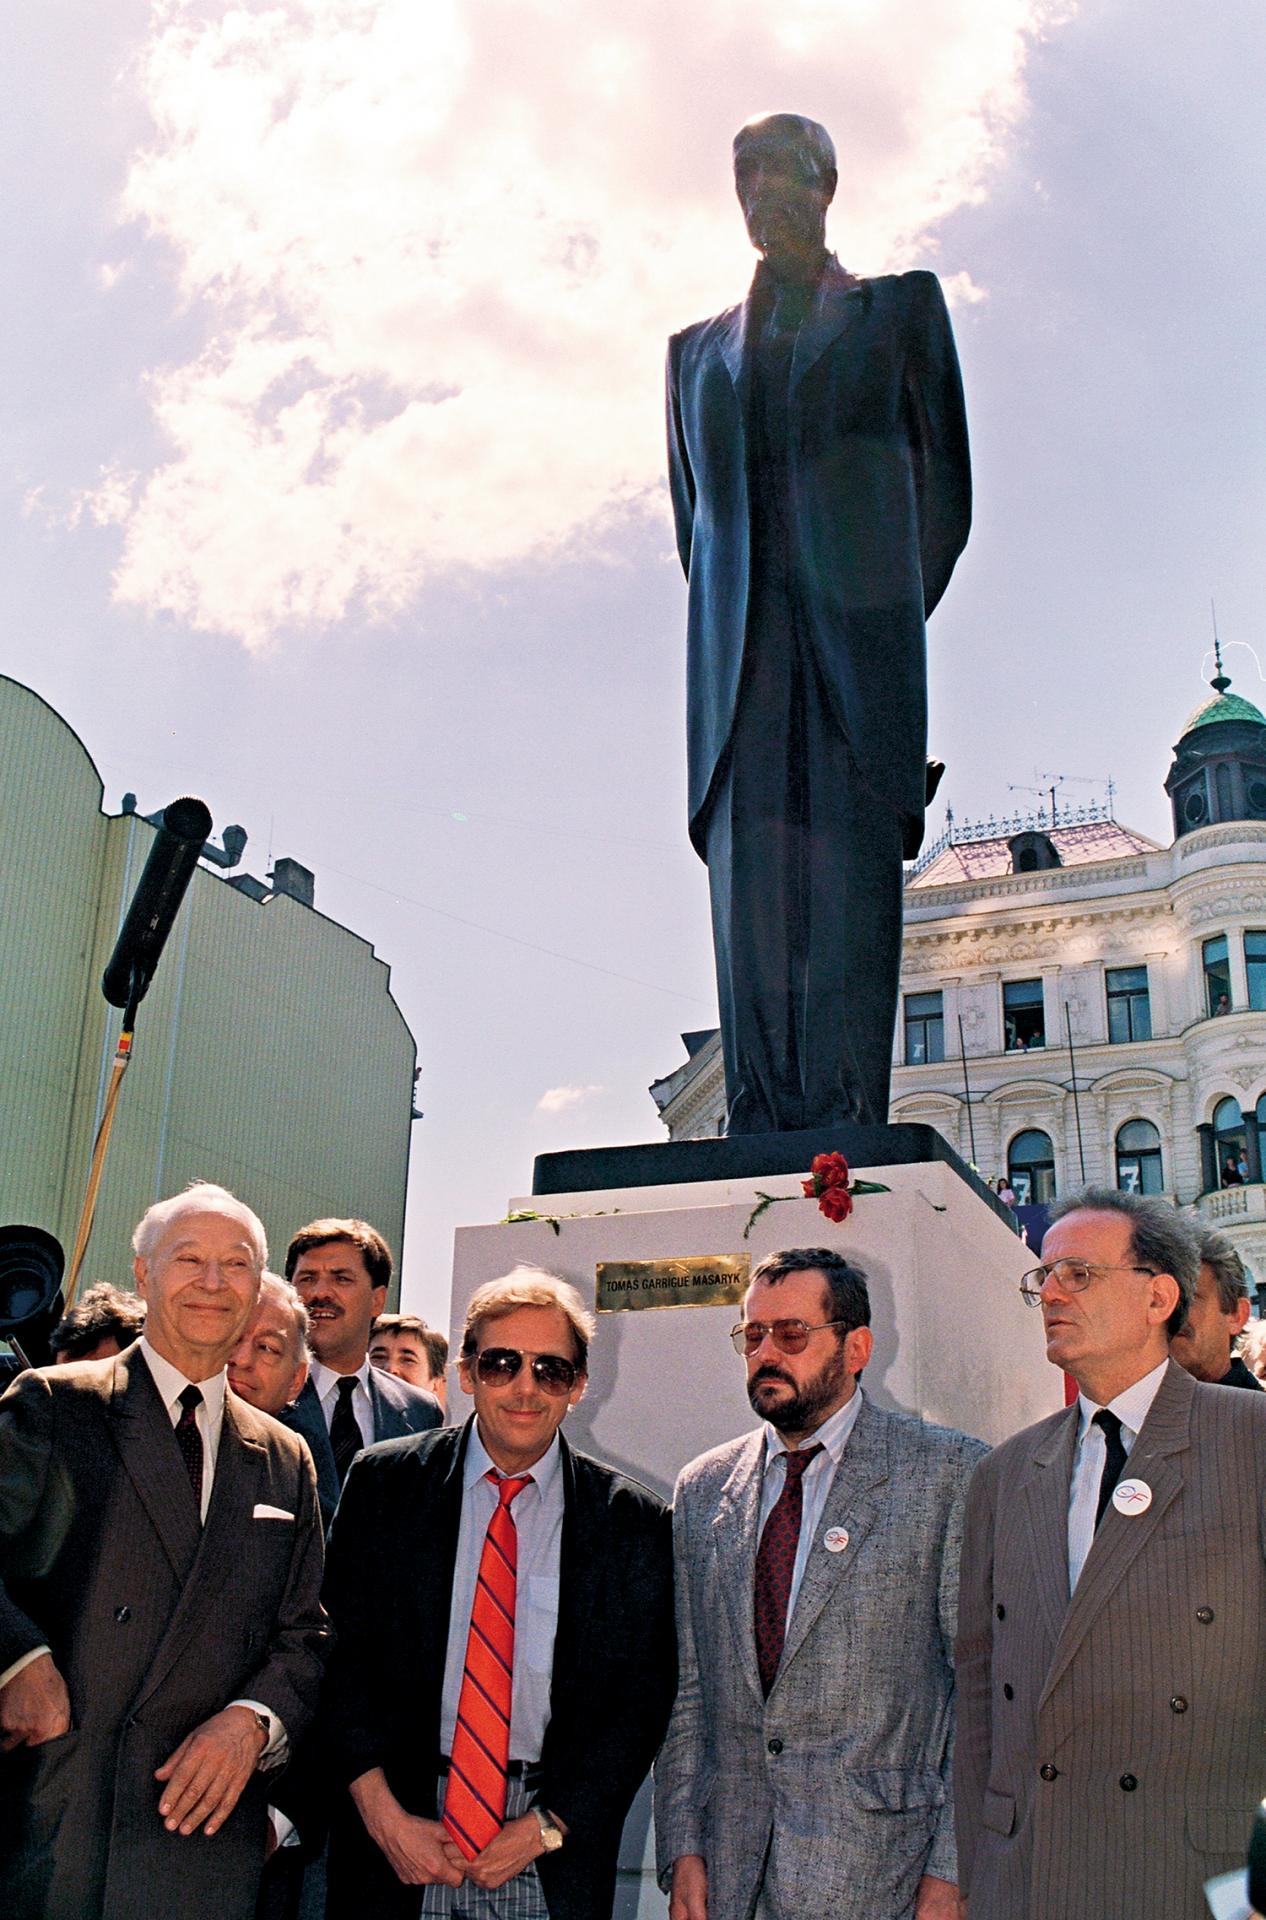 1990 Praha: Alexander Dubček a Václav Havel pri inaugurácii sochy T. G Masaryka, predstaviteľa čechoslovakizmu.